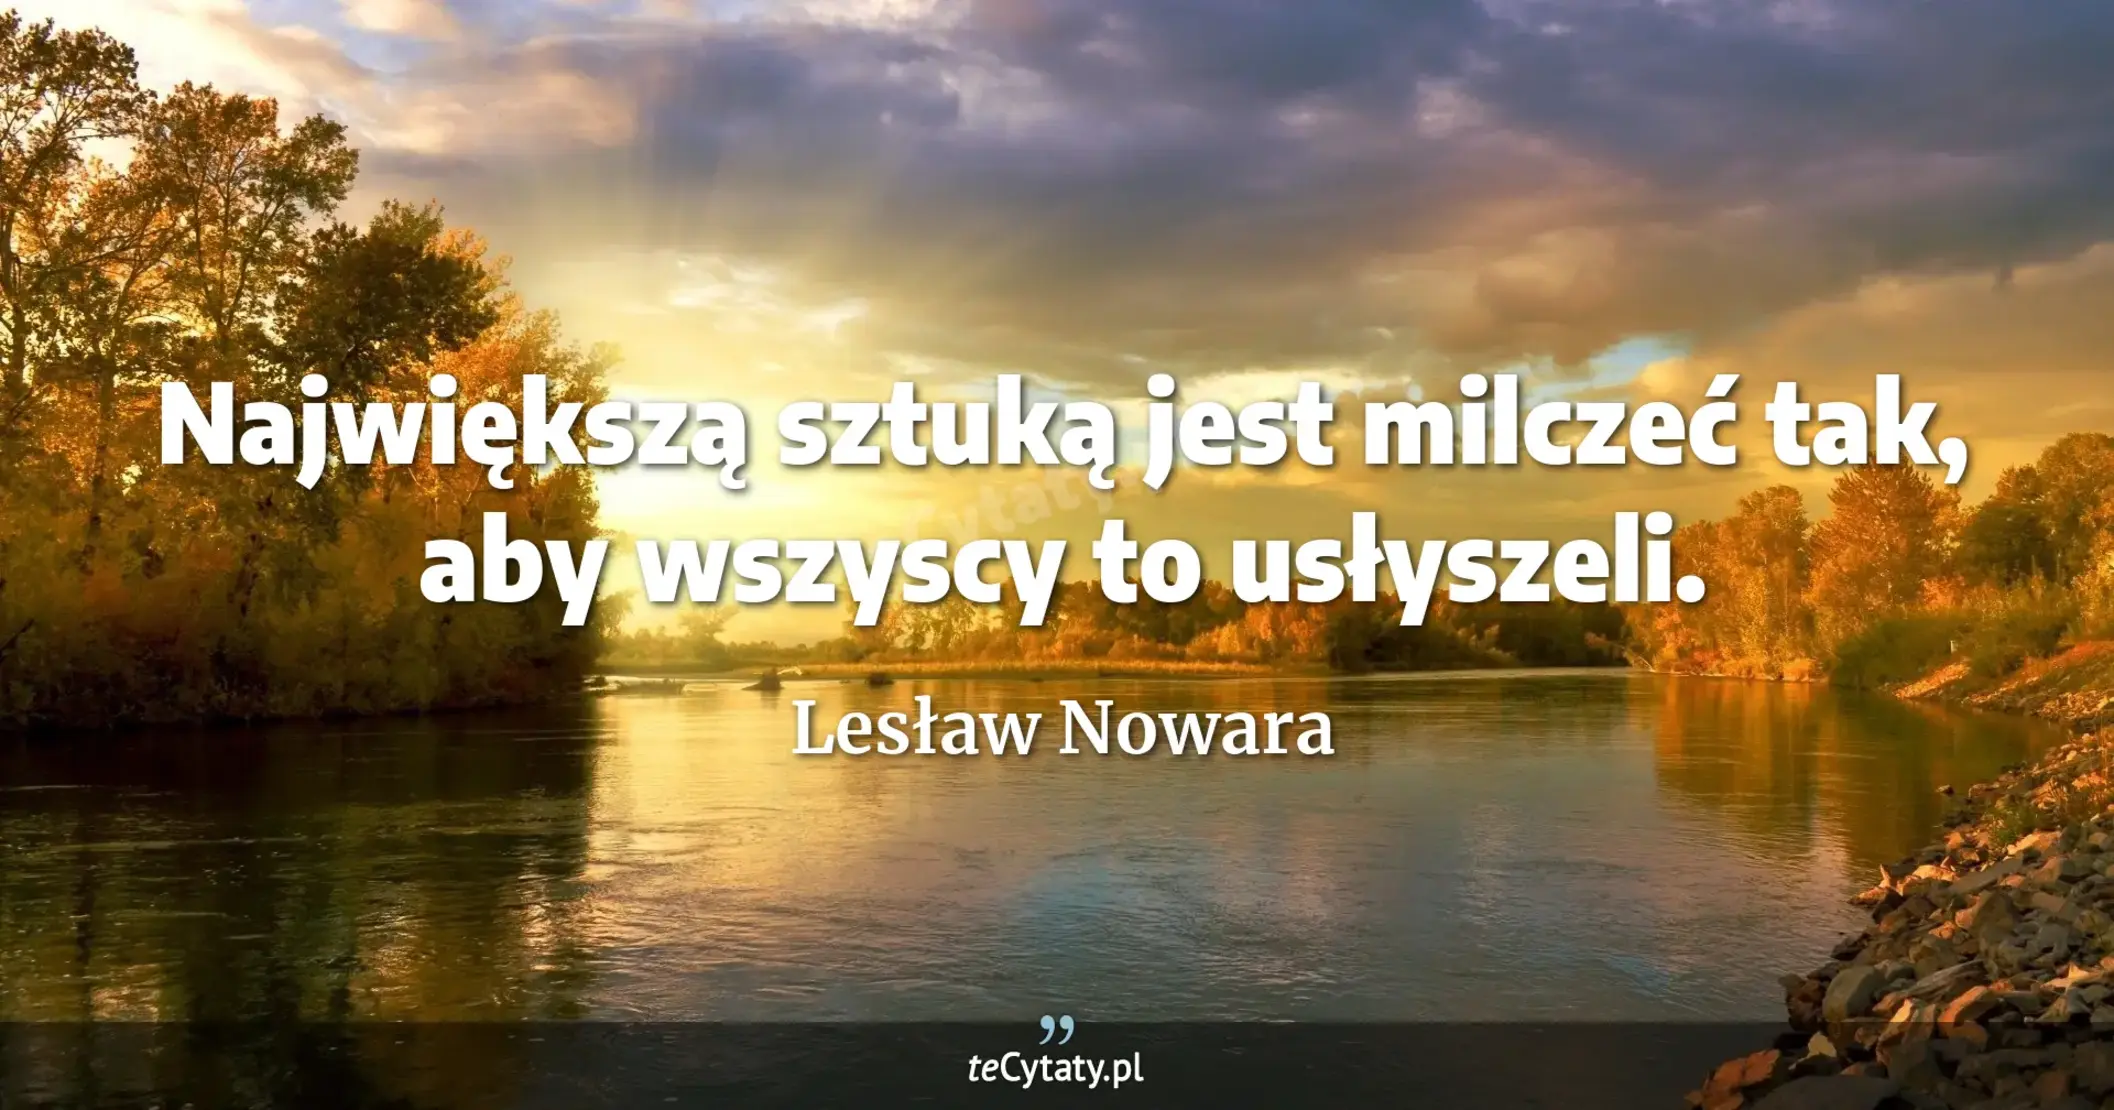 Największą sztuką jest milczeć tak, aby wszyscy to usłyszeli. - Lesław Nowara